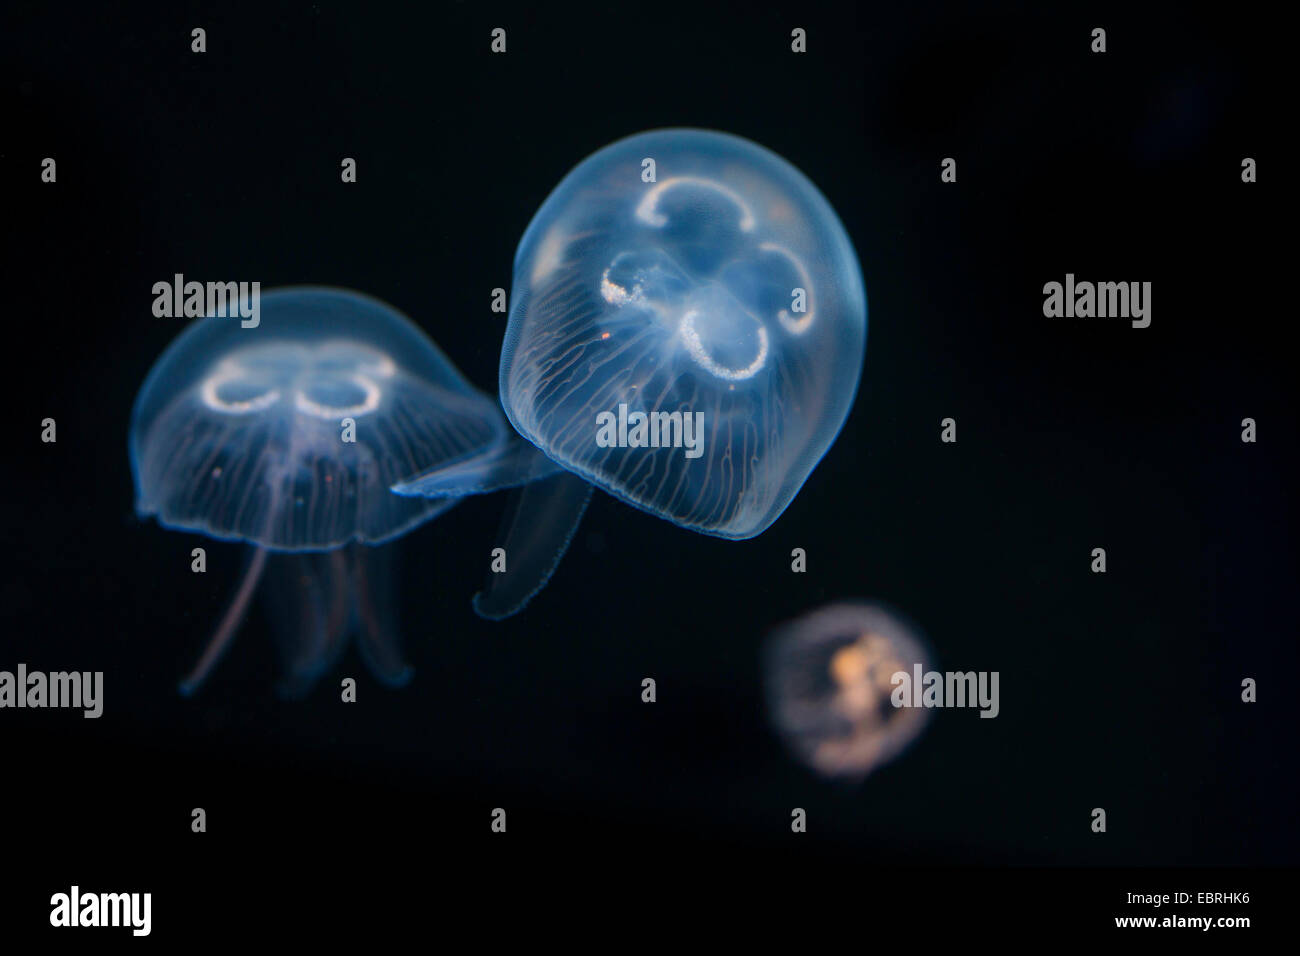 moon jelly, common jellyfish (Aurelia aurita), under water Stock Photo